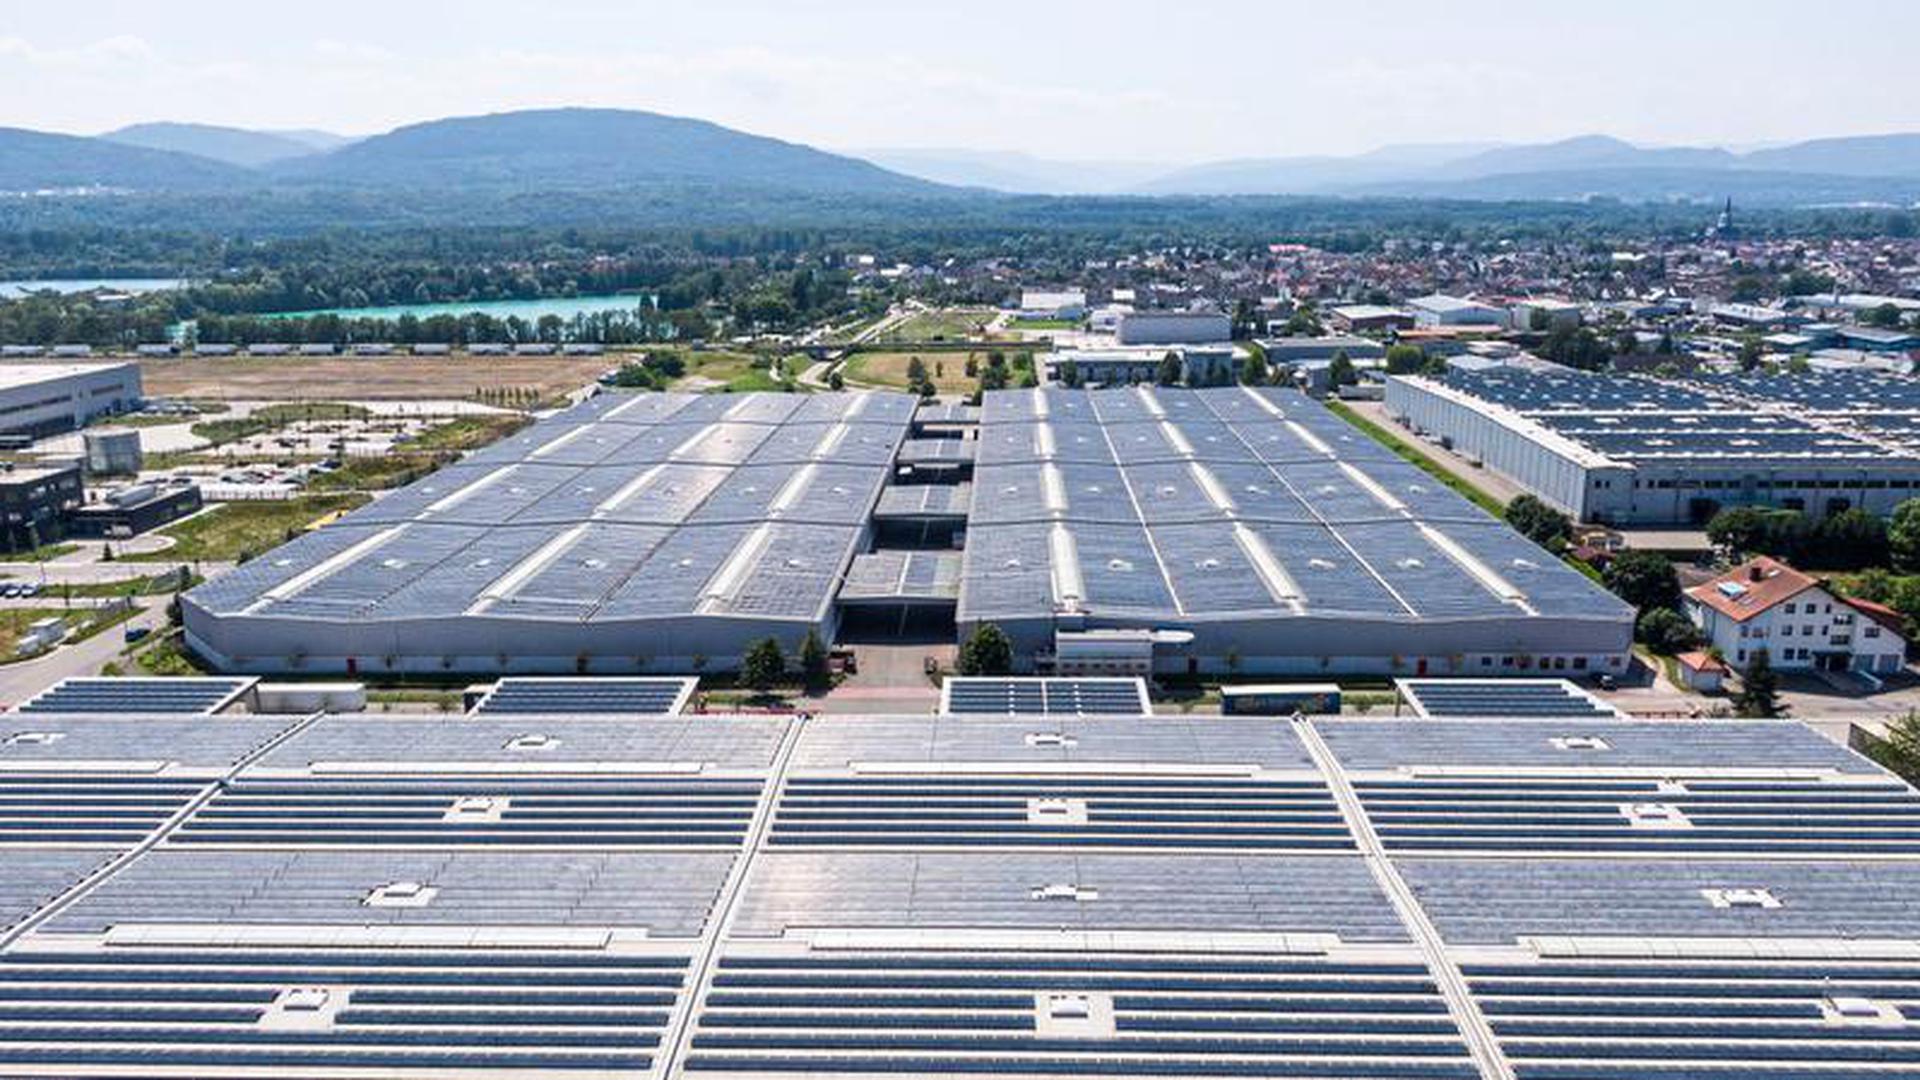 Eine der größten zusammenhängenden Flächen: Die Spedition Hartmann hat die Dächer an Tauber-Solar vermietet. Die Module produzieren so viel Strom, wie ihn durchschnittlich etwa 2.800 Menschen im Jahr verbrauchen.